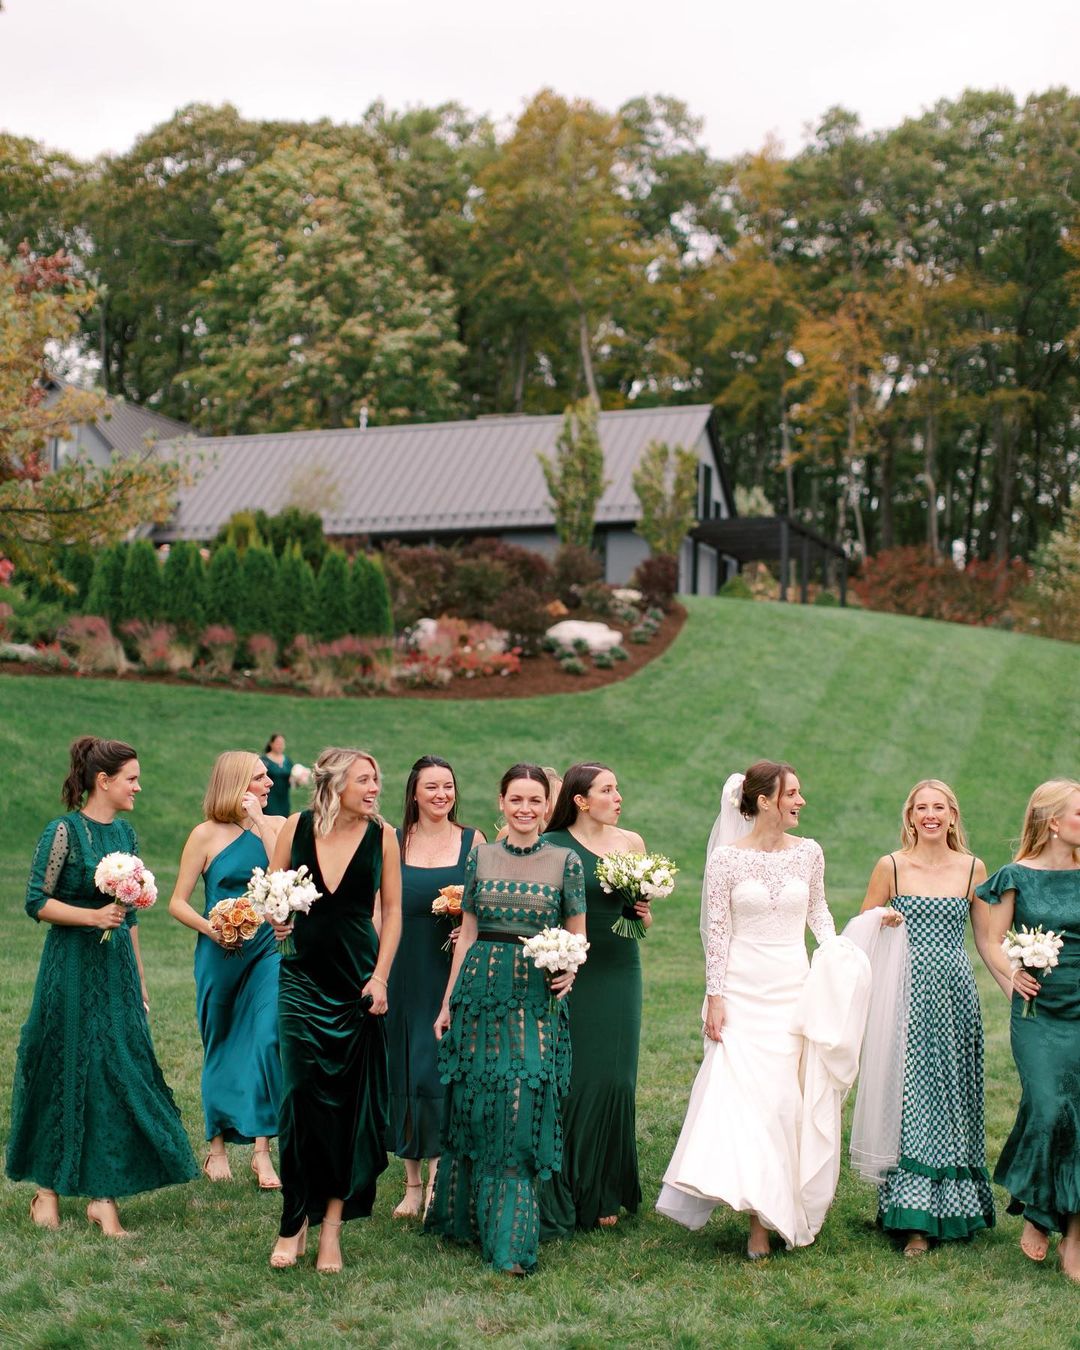 Elegant Long Grey Fall Wedding Guest Dress Attire With Sheer